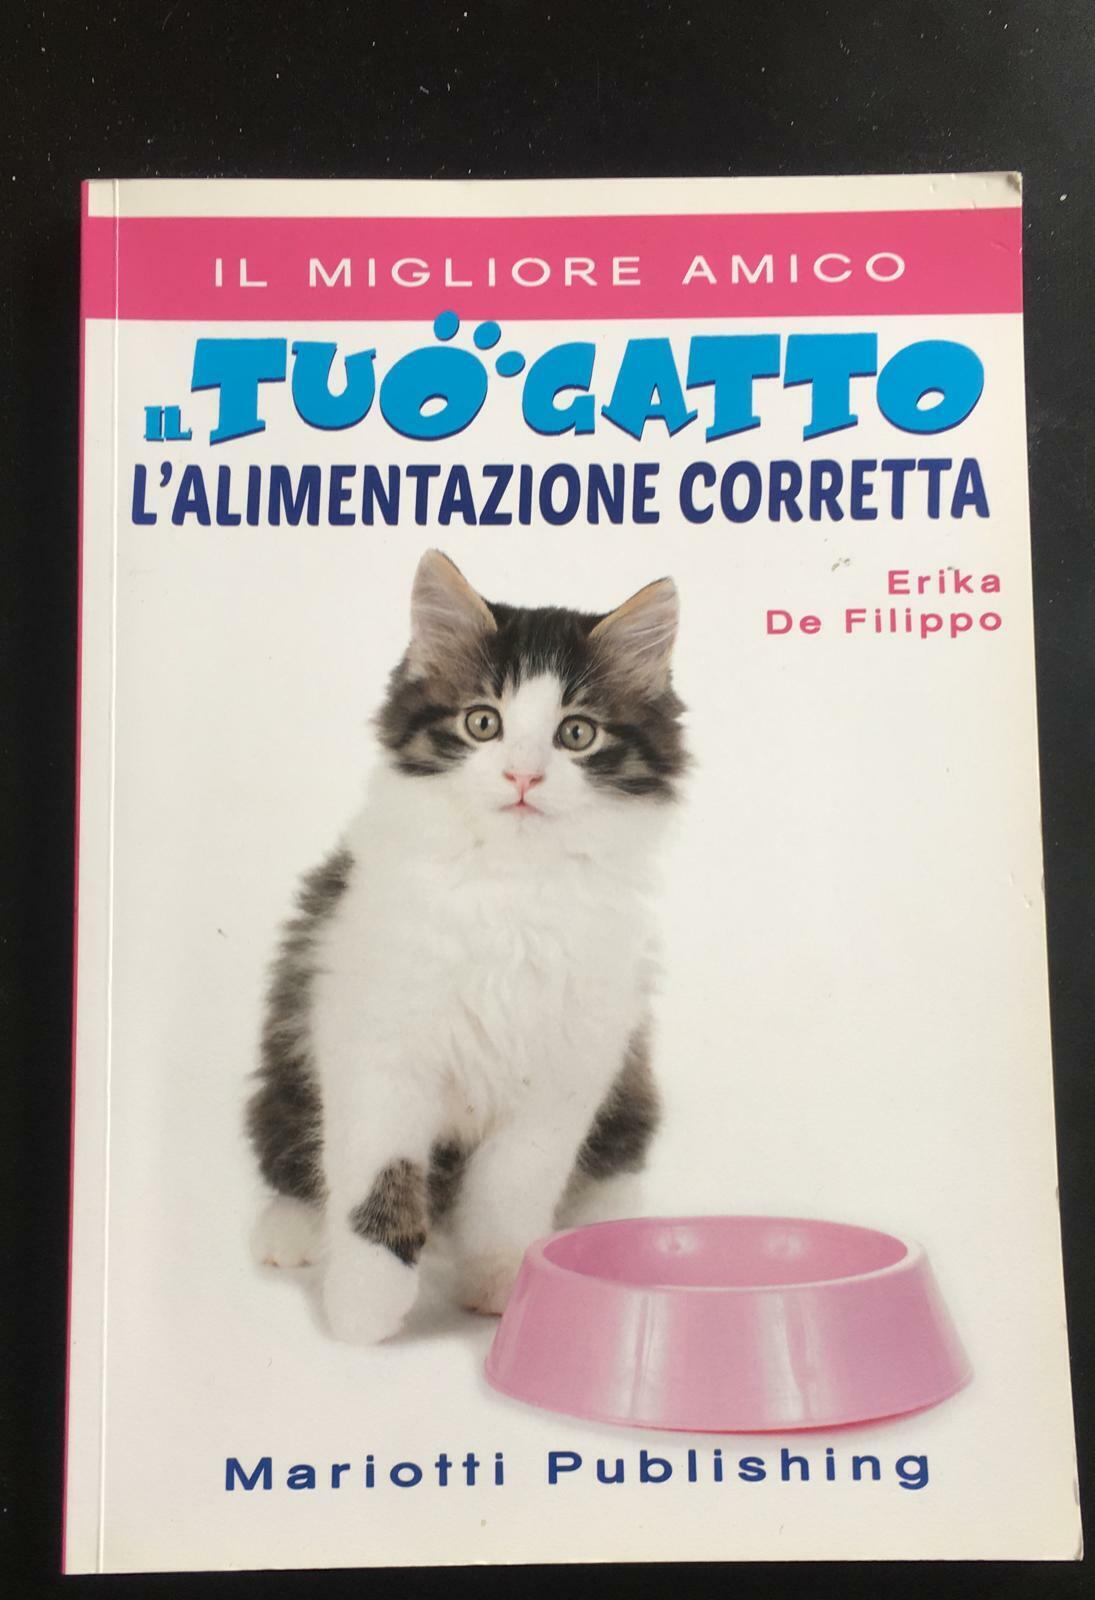 Il tuo gatto L'alimentazione corretta - Erika De Filippo,  2016,  Mariotti - P